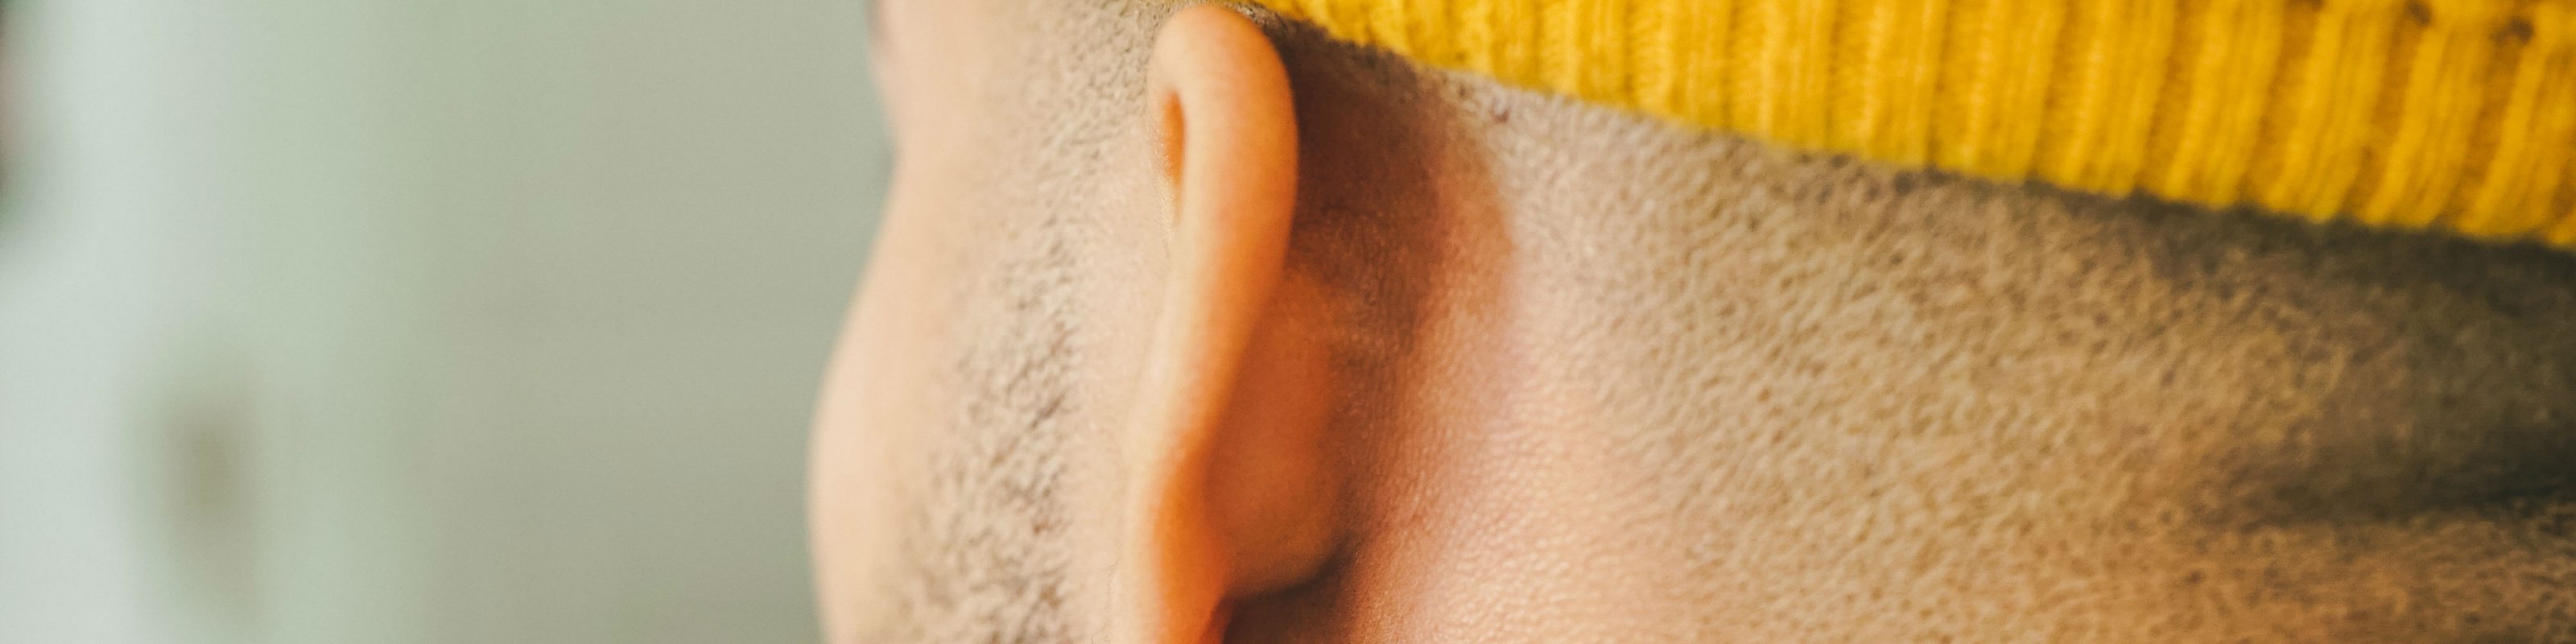 A mans ear